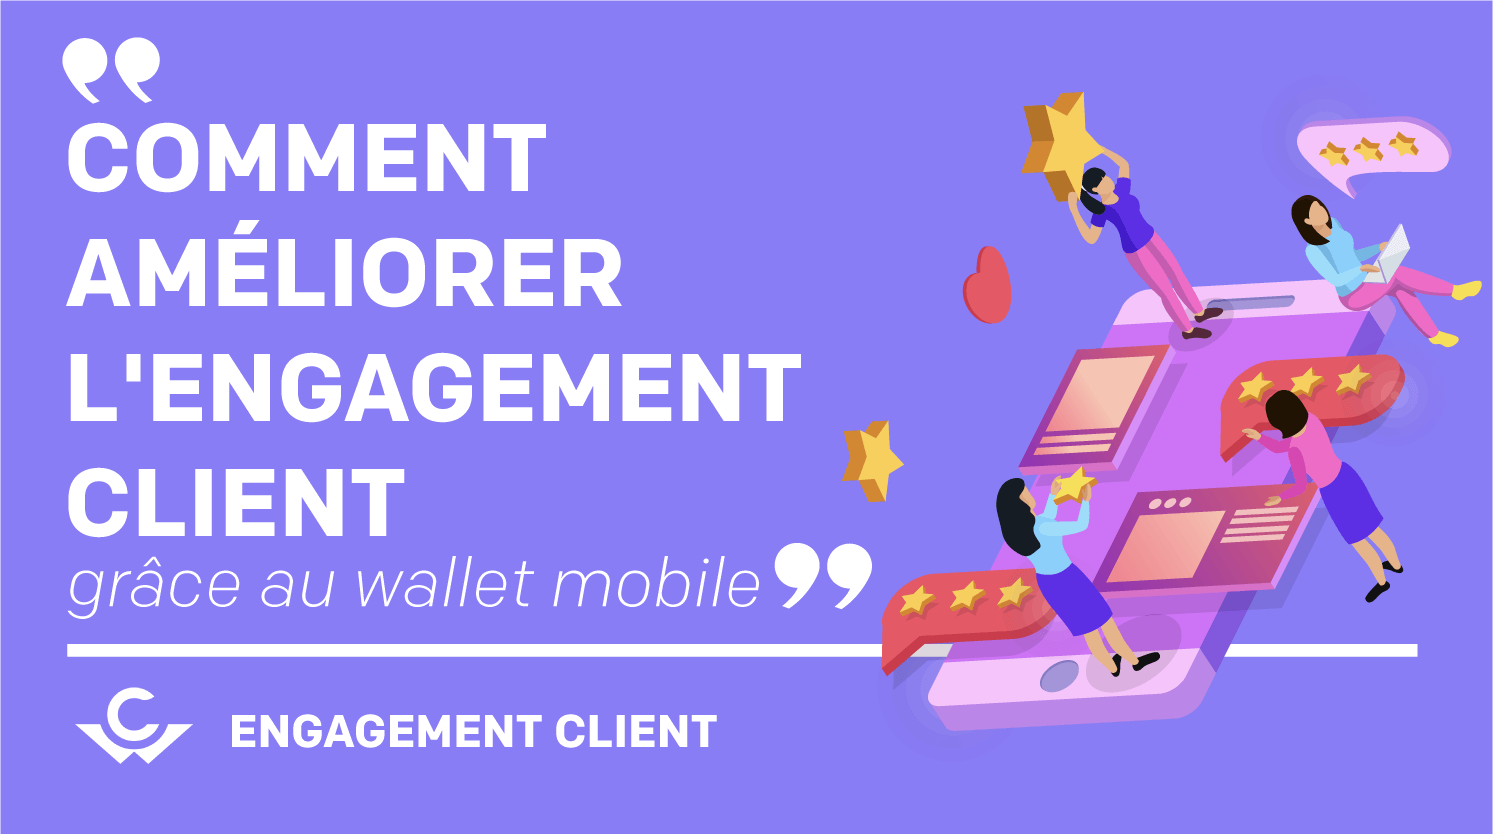 Visuel Comment améliorer l’engagement client grâce au mobile wallet ?